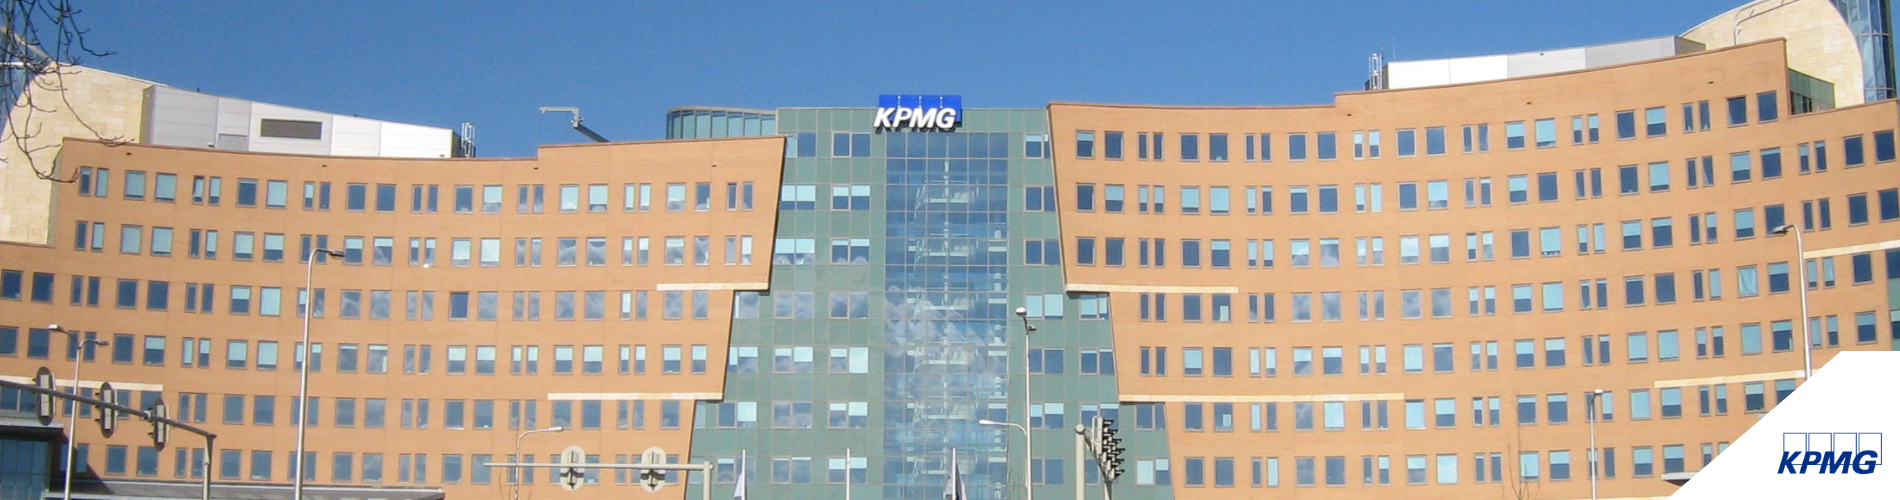 werken-bij-KPMG